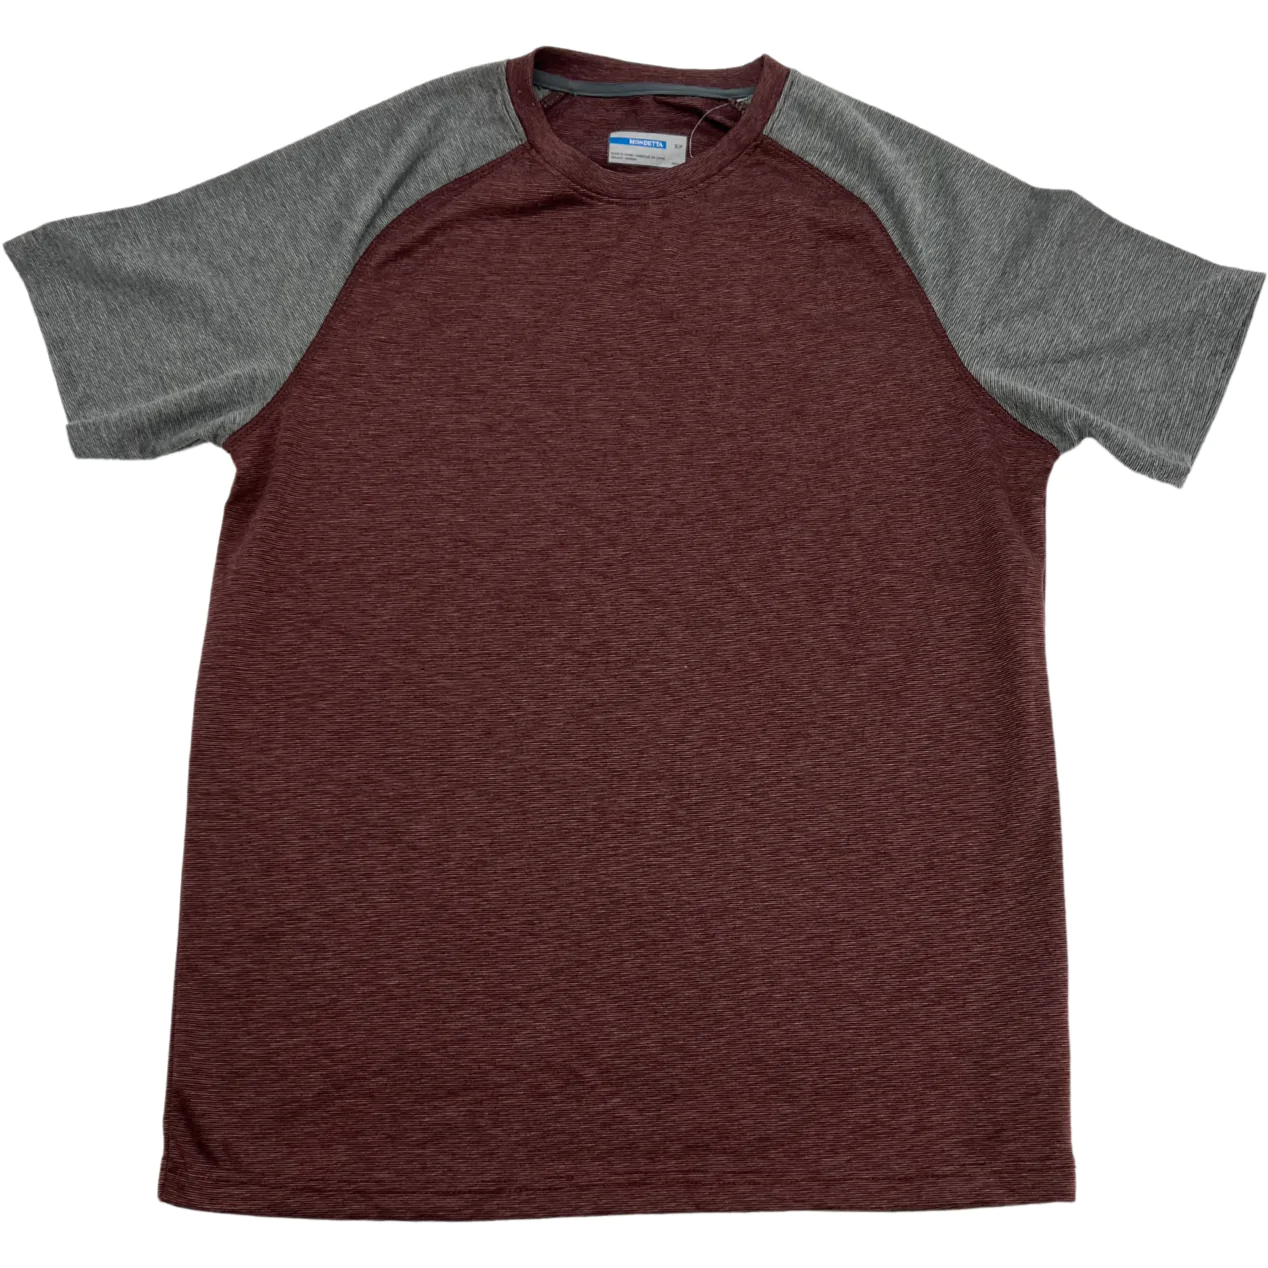 Mondetta Women's Crew Neck Short Sleeve Shirt: Brown & Grey / T-Shirt / Size Small